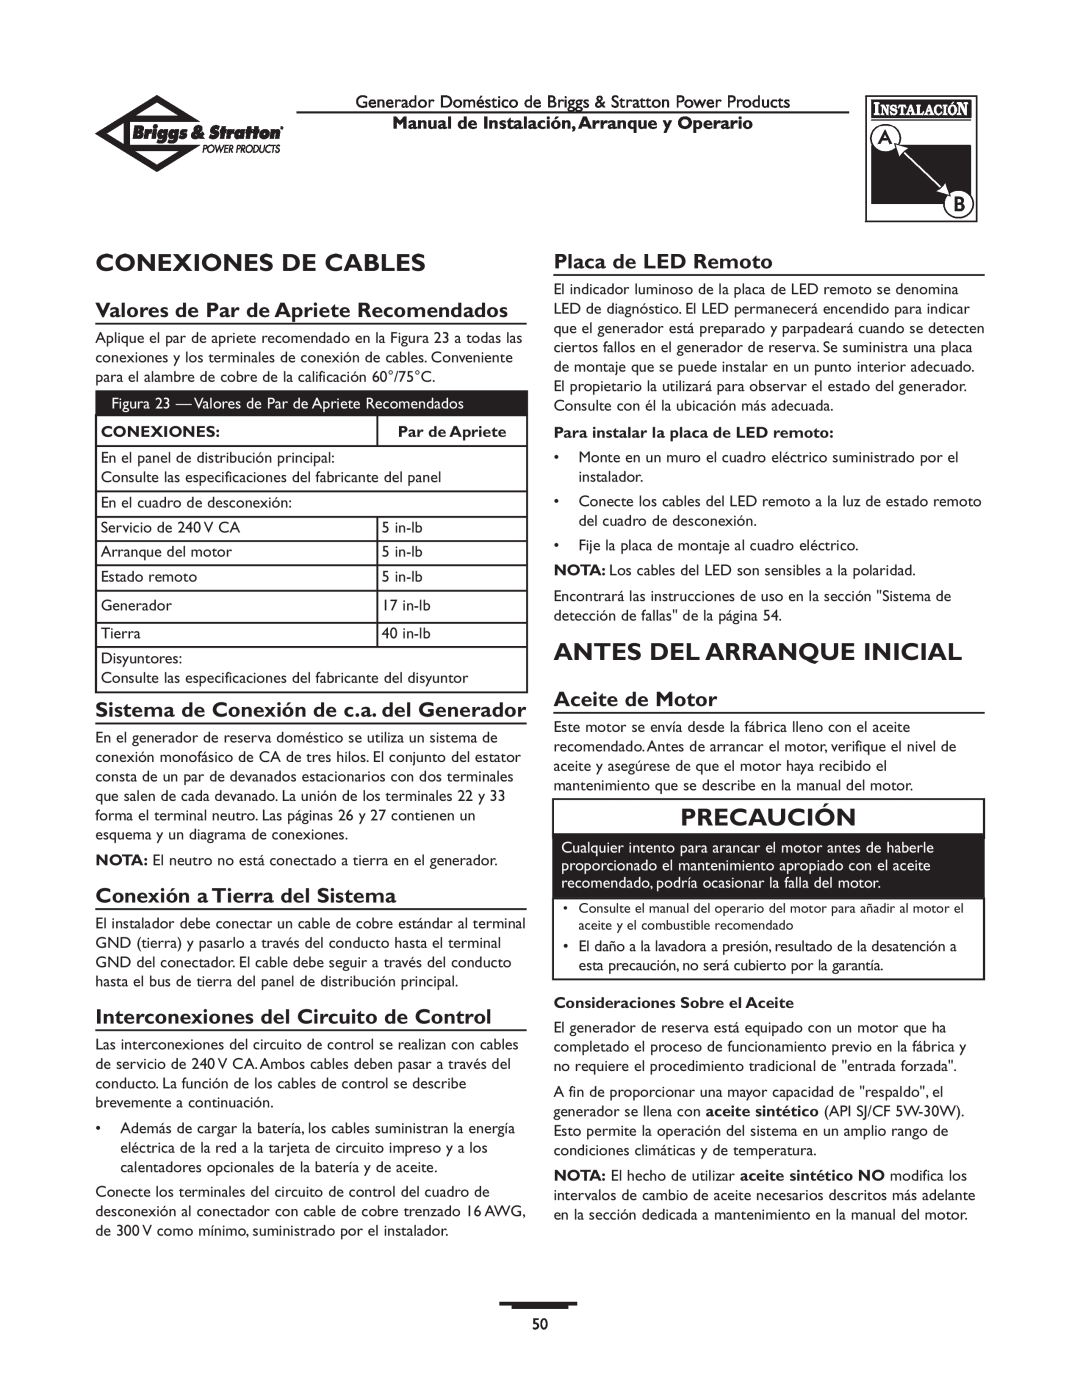 Briggs & Stratton 01897-0 manual Conexiones De Cables, Antes Del Arranque Inicial, Valores de Par de Apriete Recomendados 